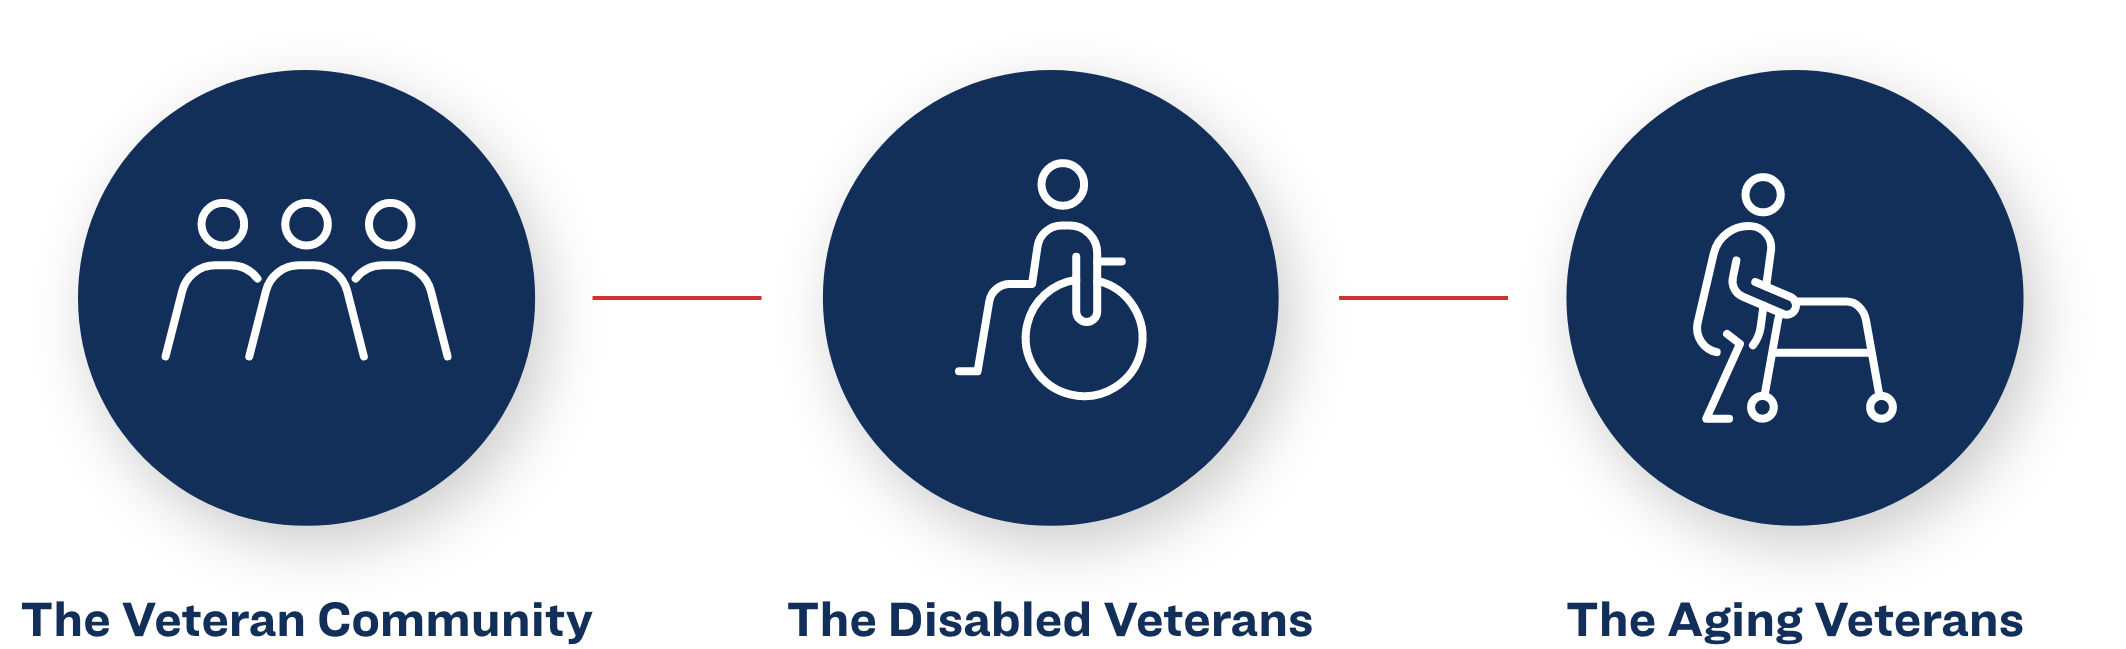 3 categories of veterans